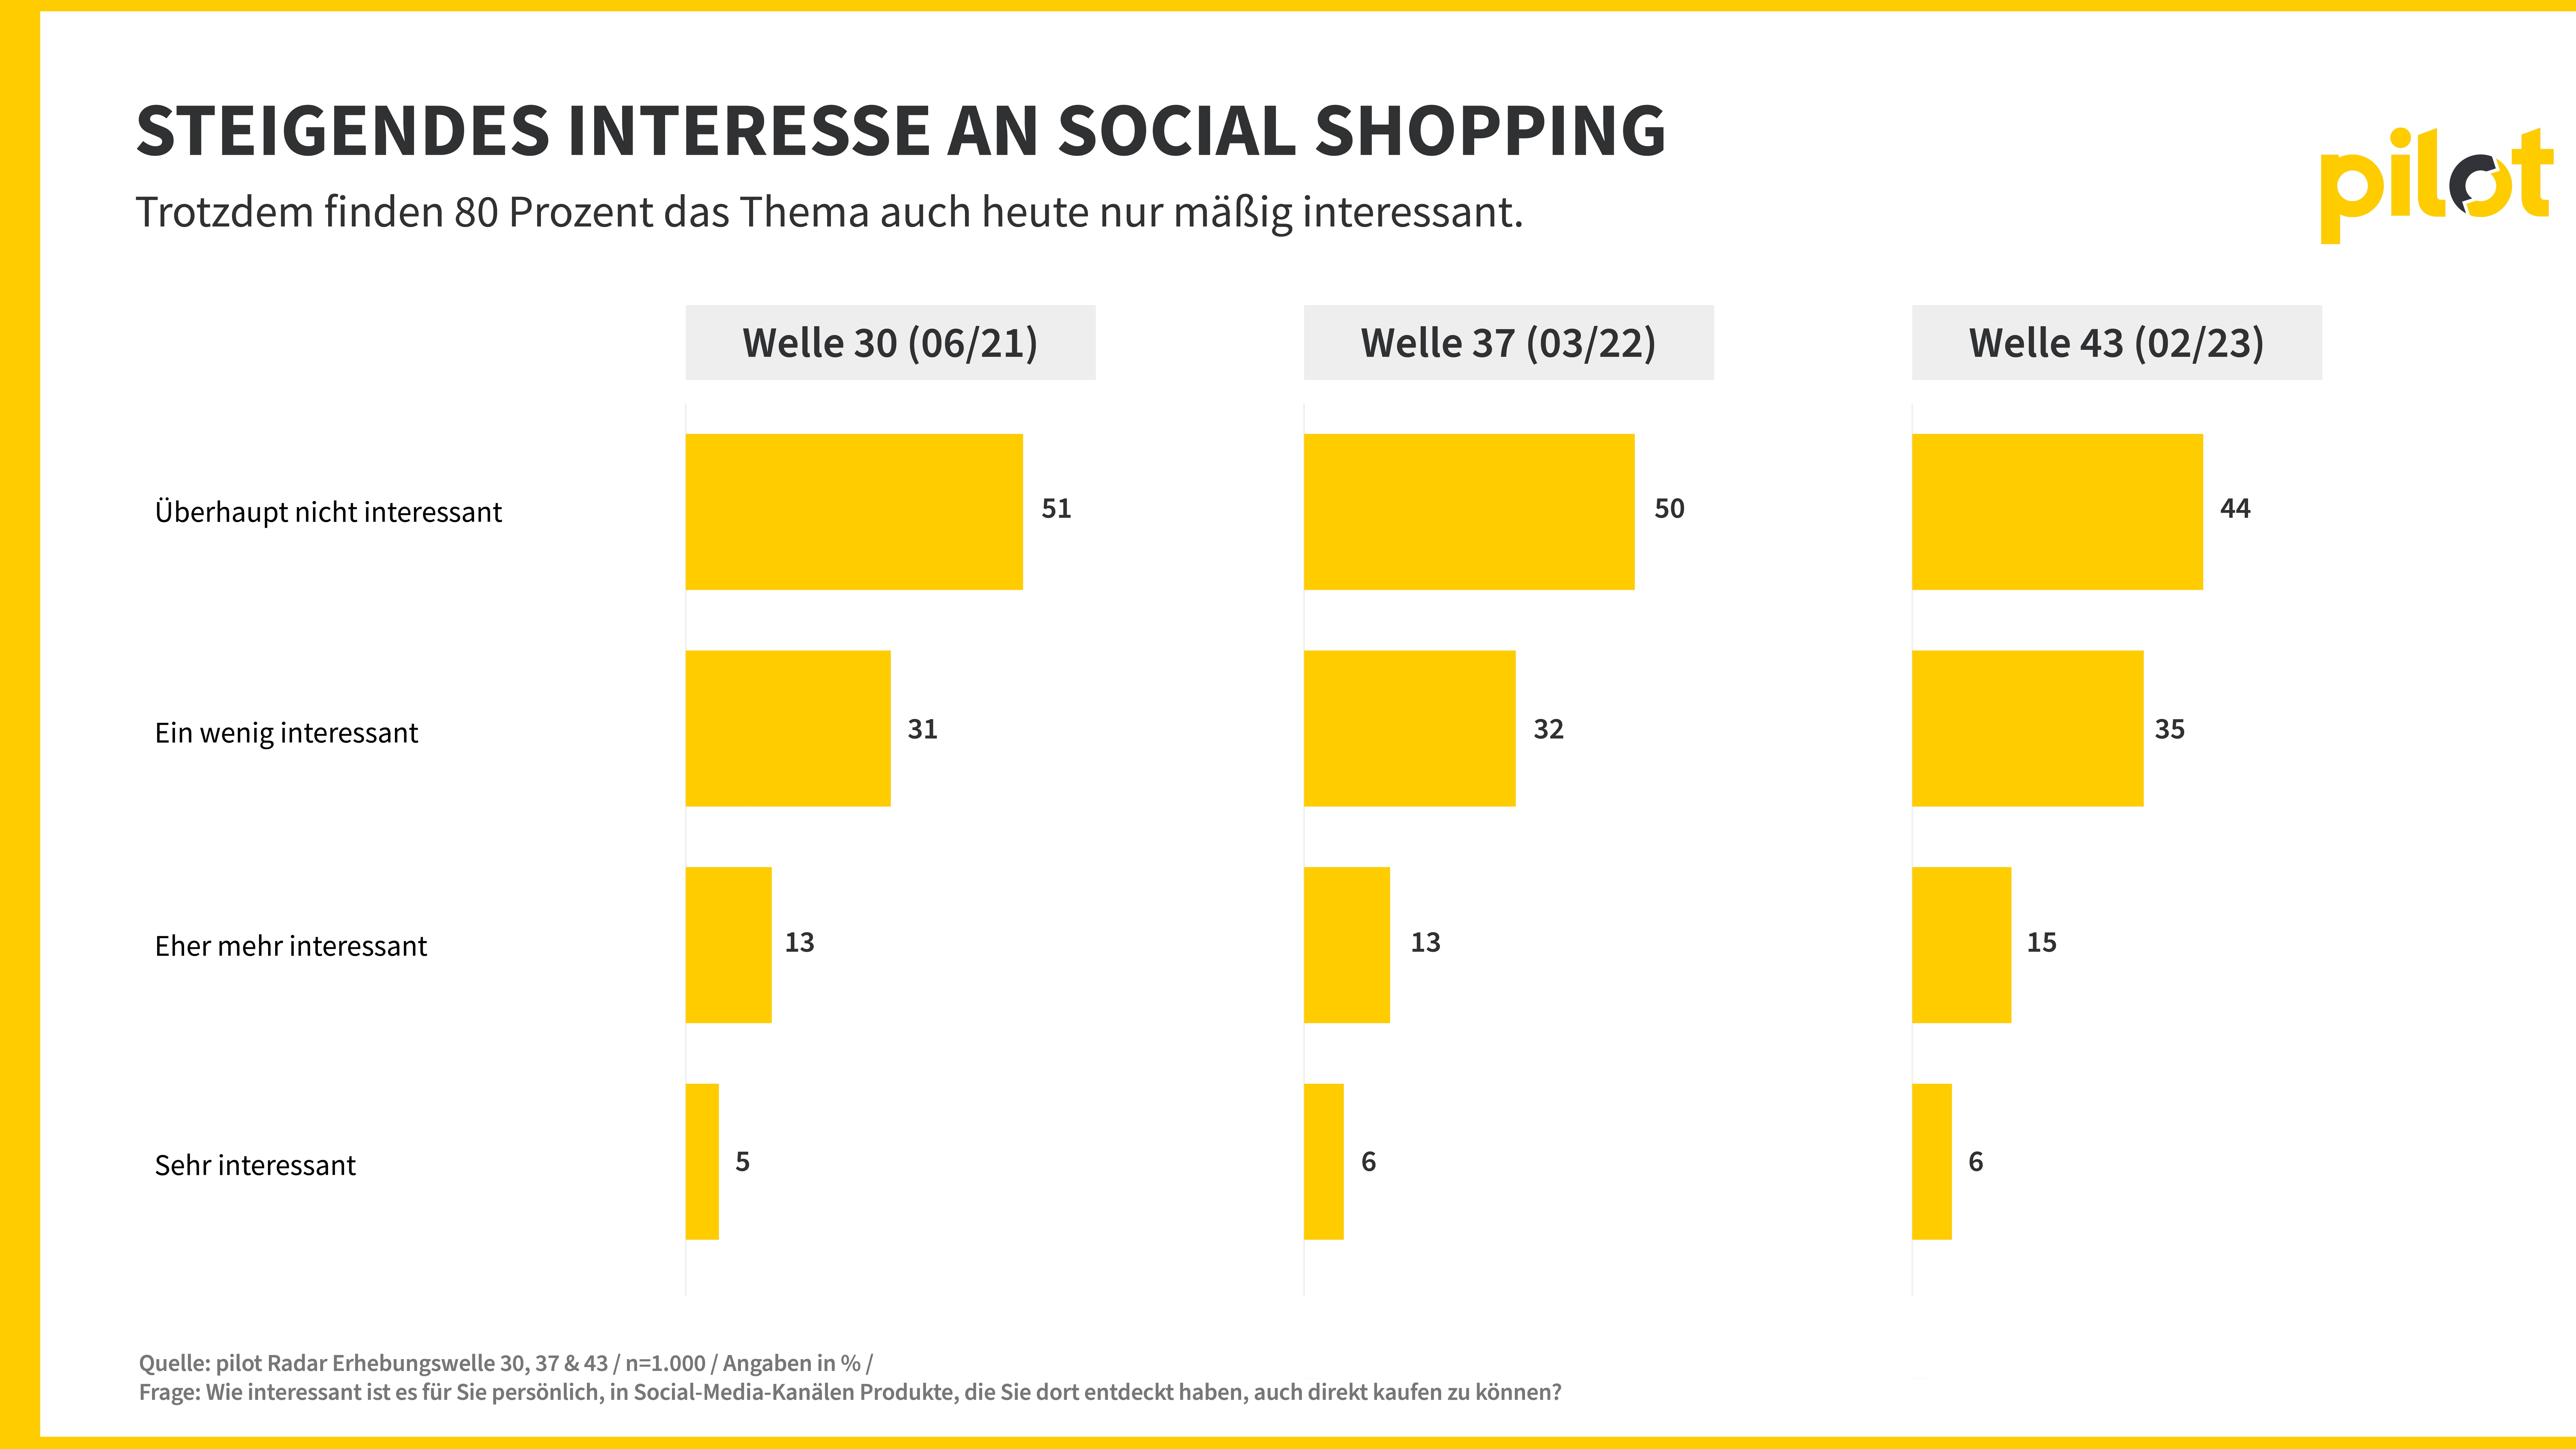 Interesse an Social Shopping steigt, bleibt aber Nischenthema - Quelle: Pilot-Radar